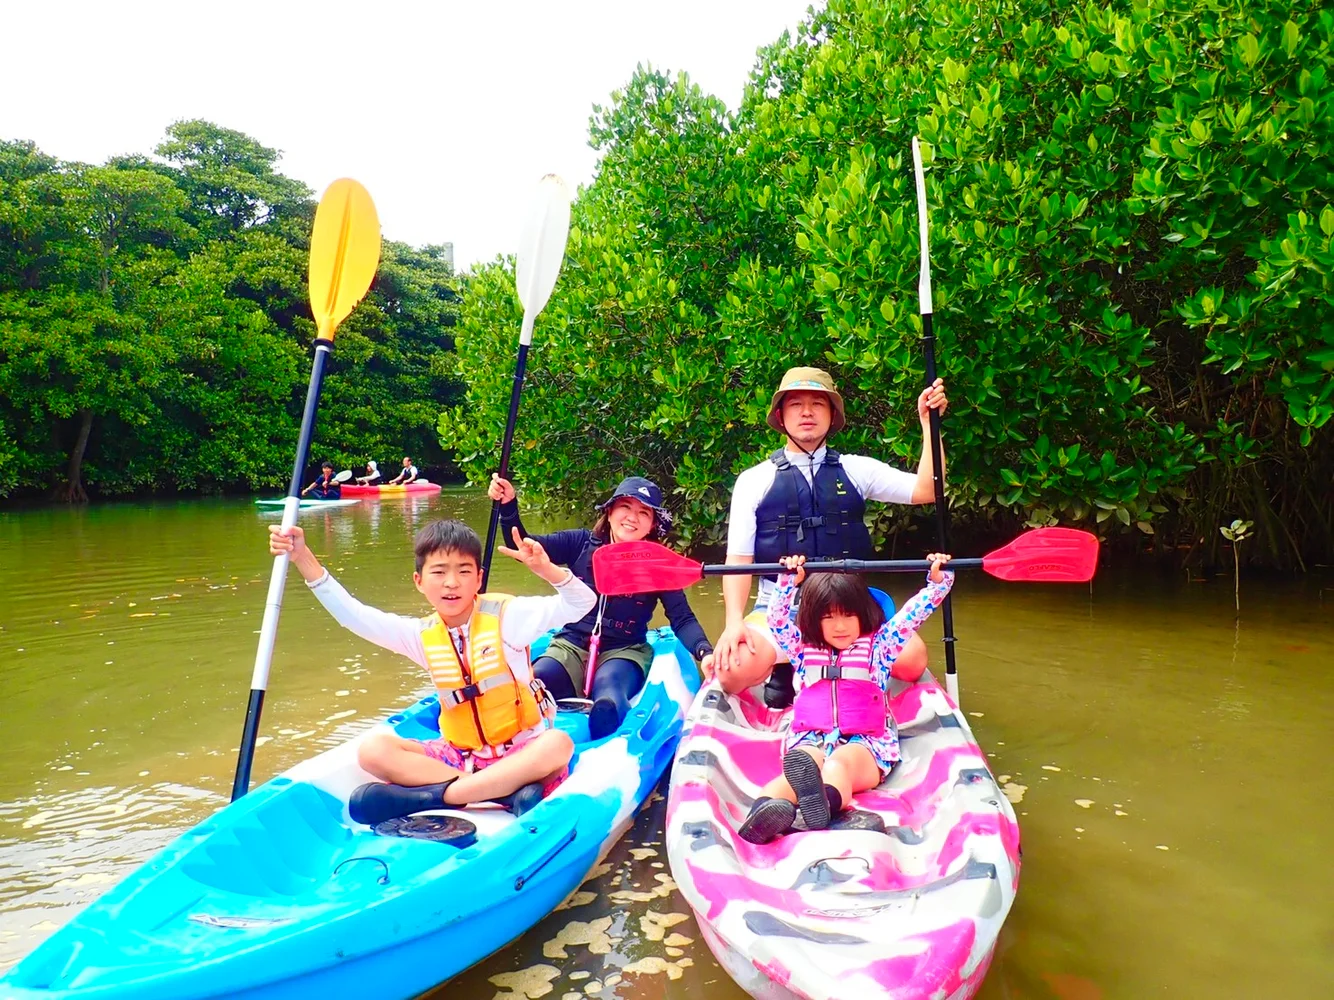 Miyara River Mangrove SUP or Canoeing at Ishigaki, Okinawa